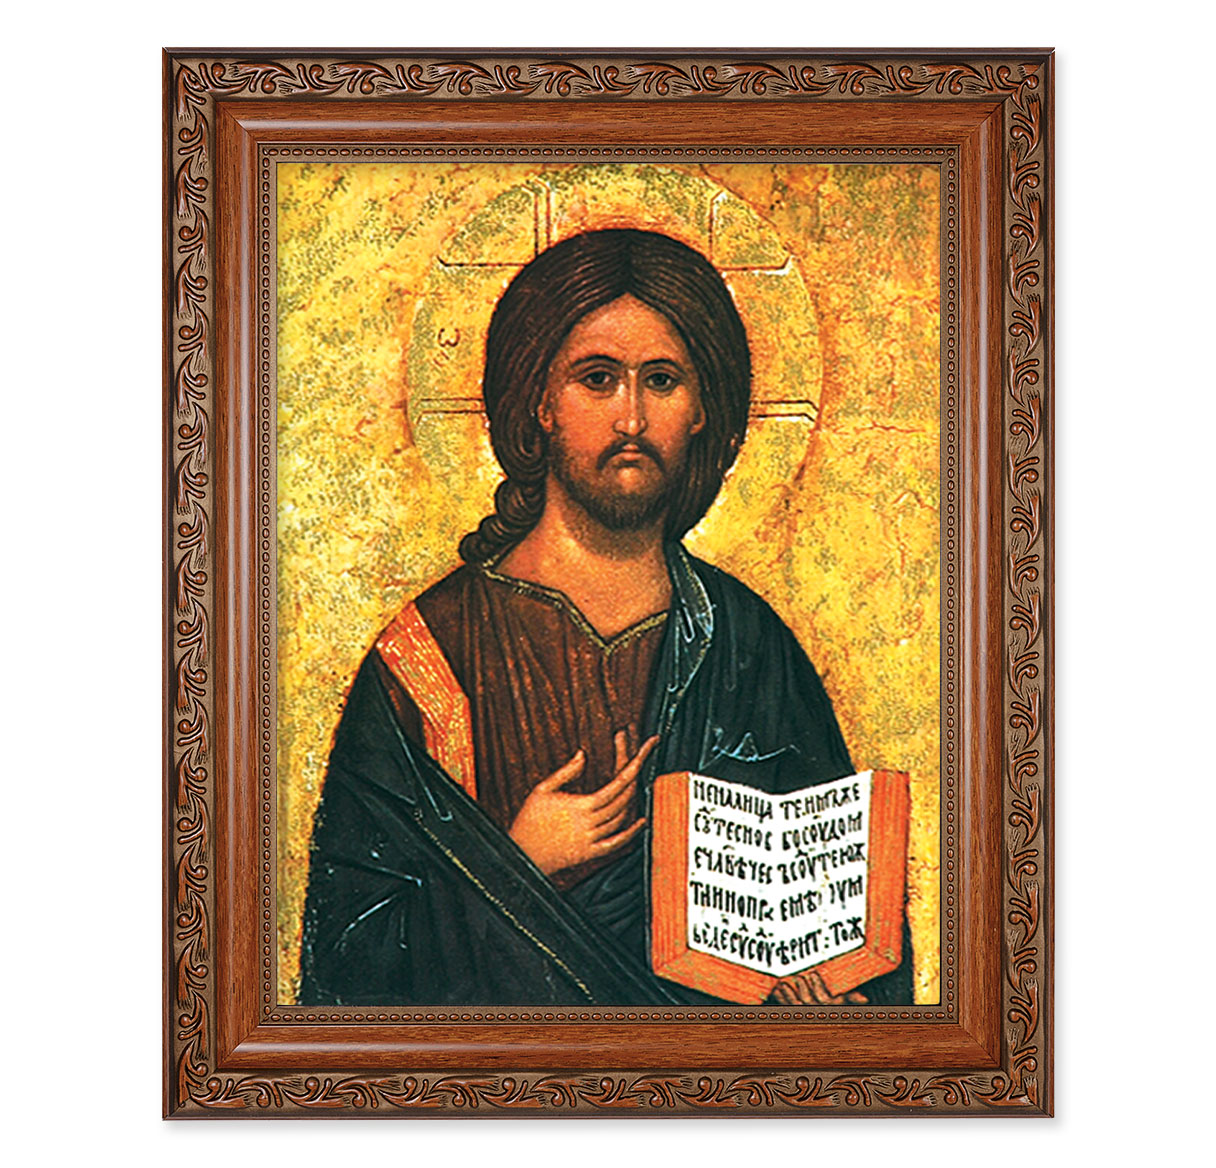 Christ The Teacher Mahogany Finished Framed Art